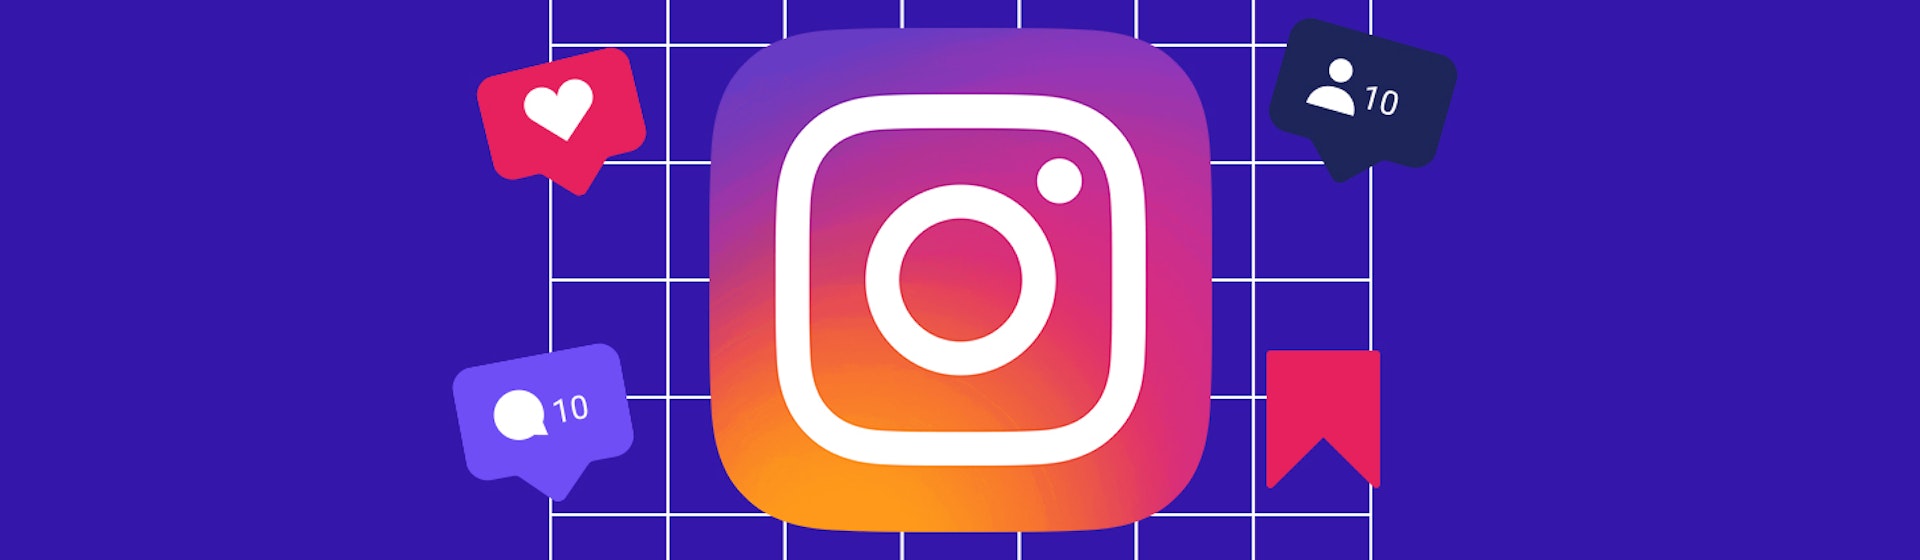 10 acciones de Instagram que te ayudarán a tener un perfil exitoso